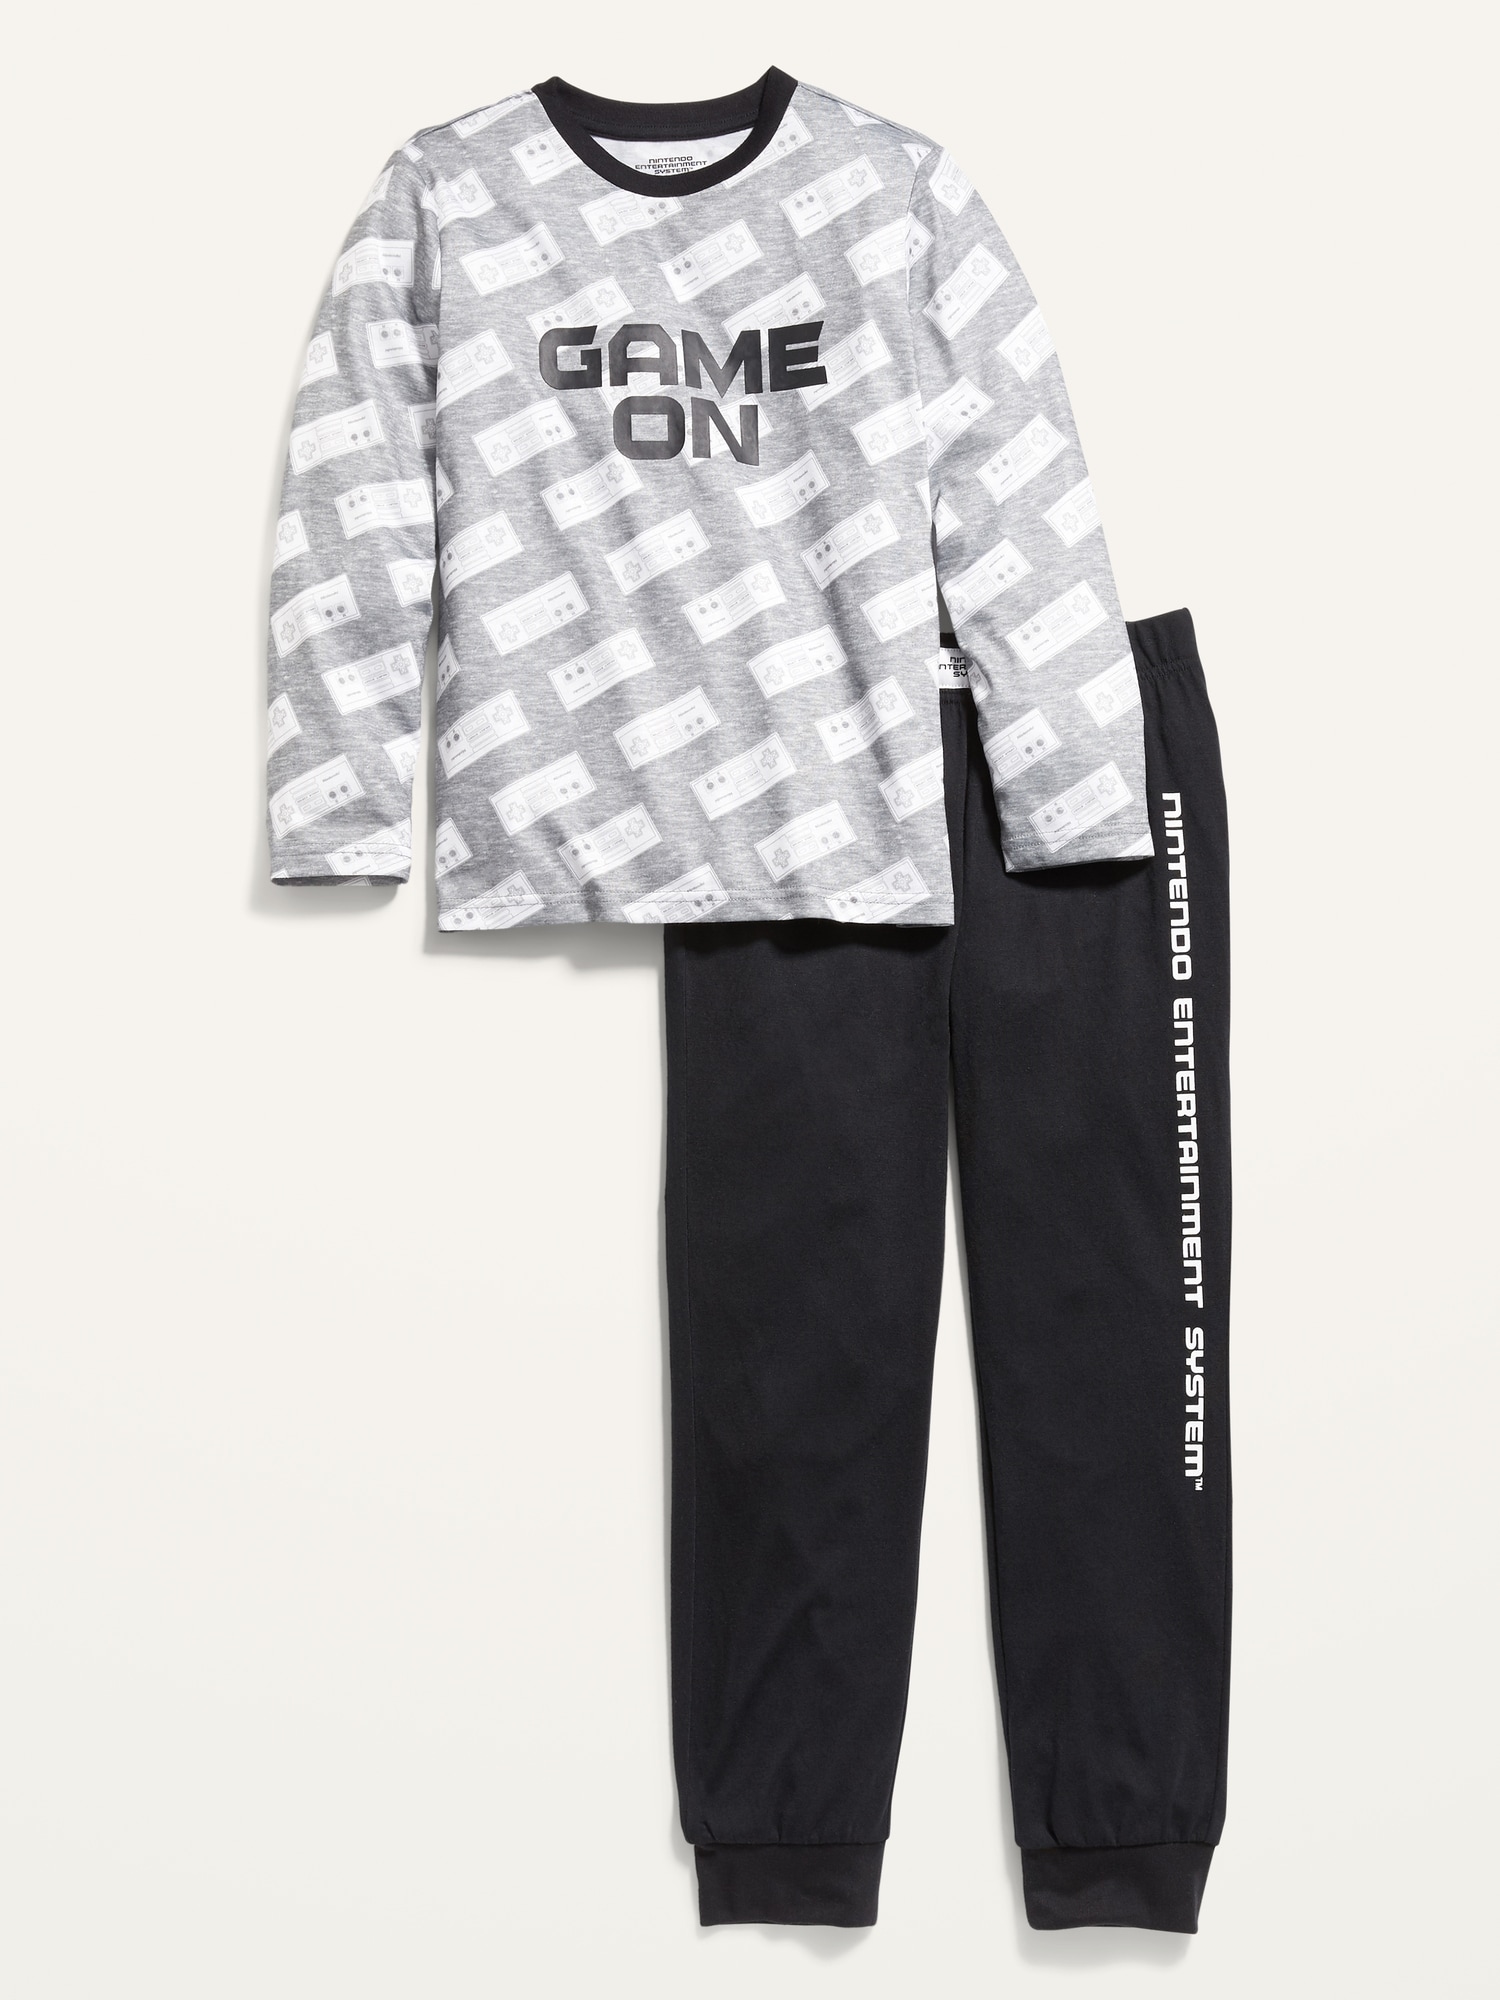 Gender-Neutral Pop Culture Pajama Set for Kids